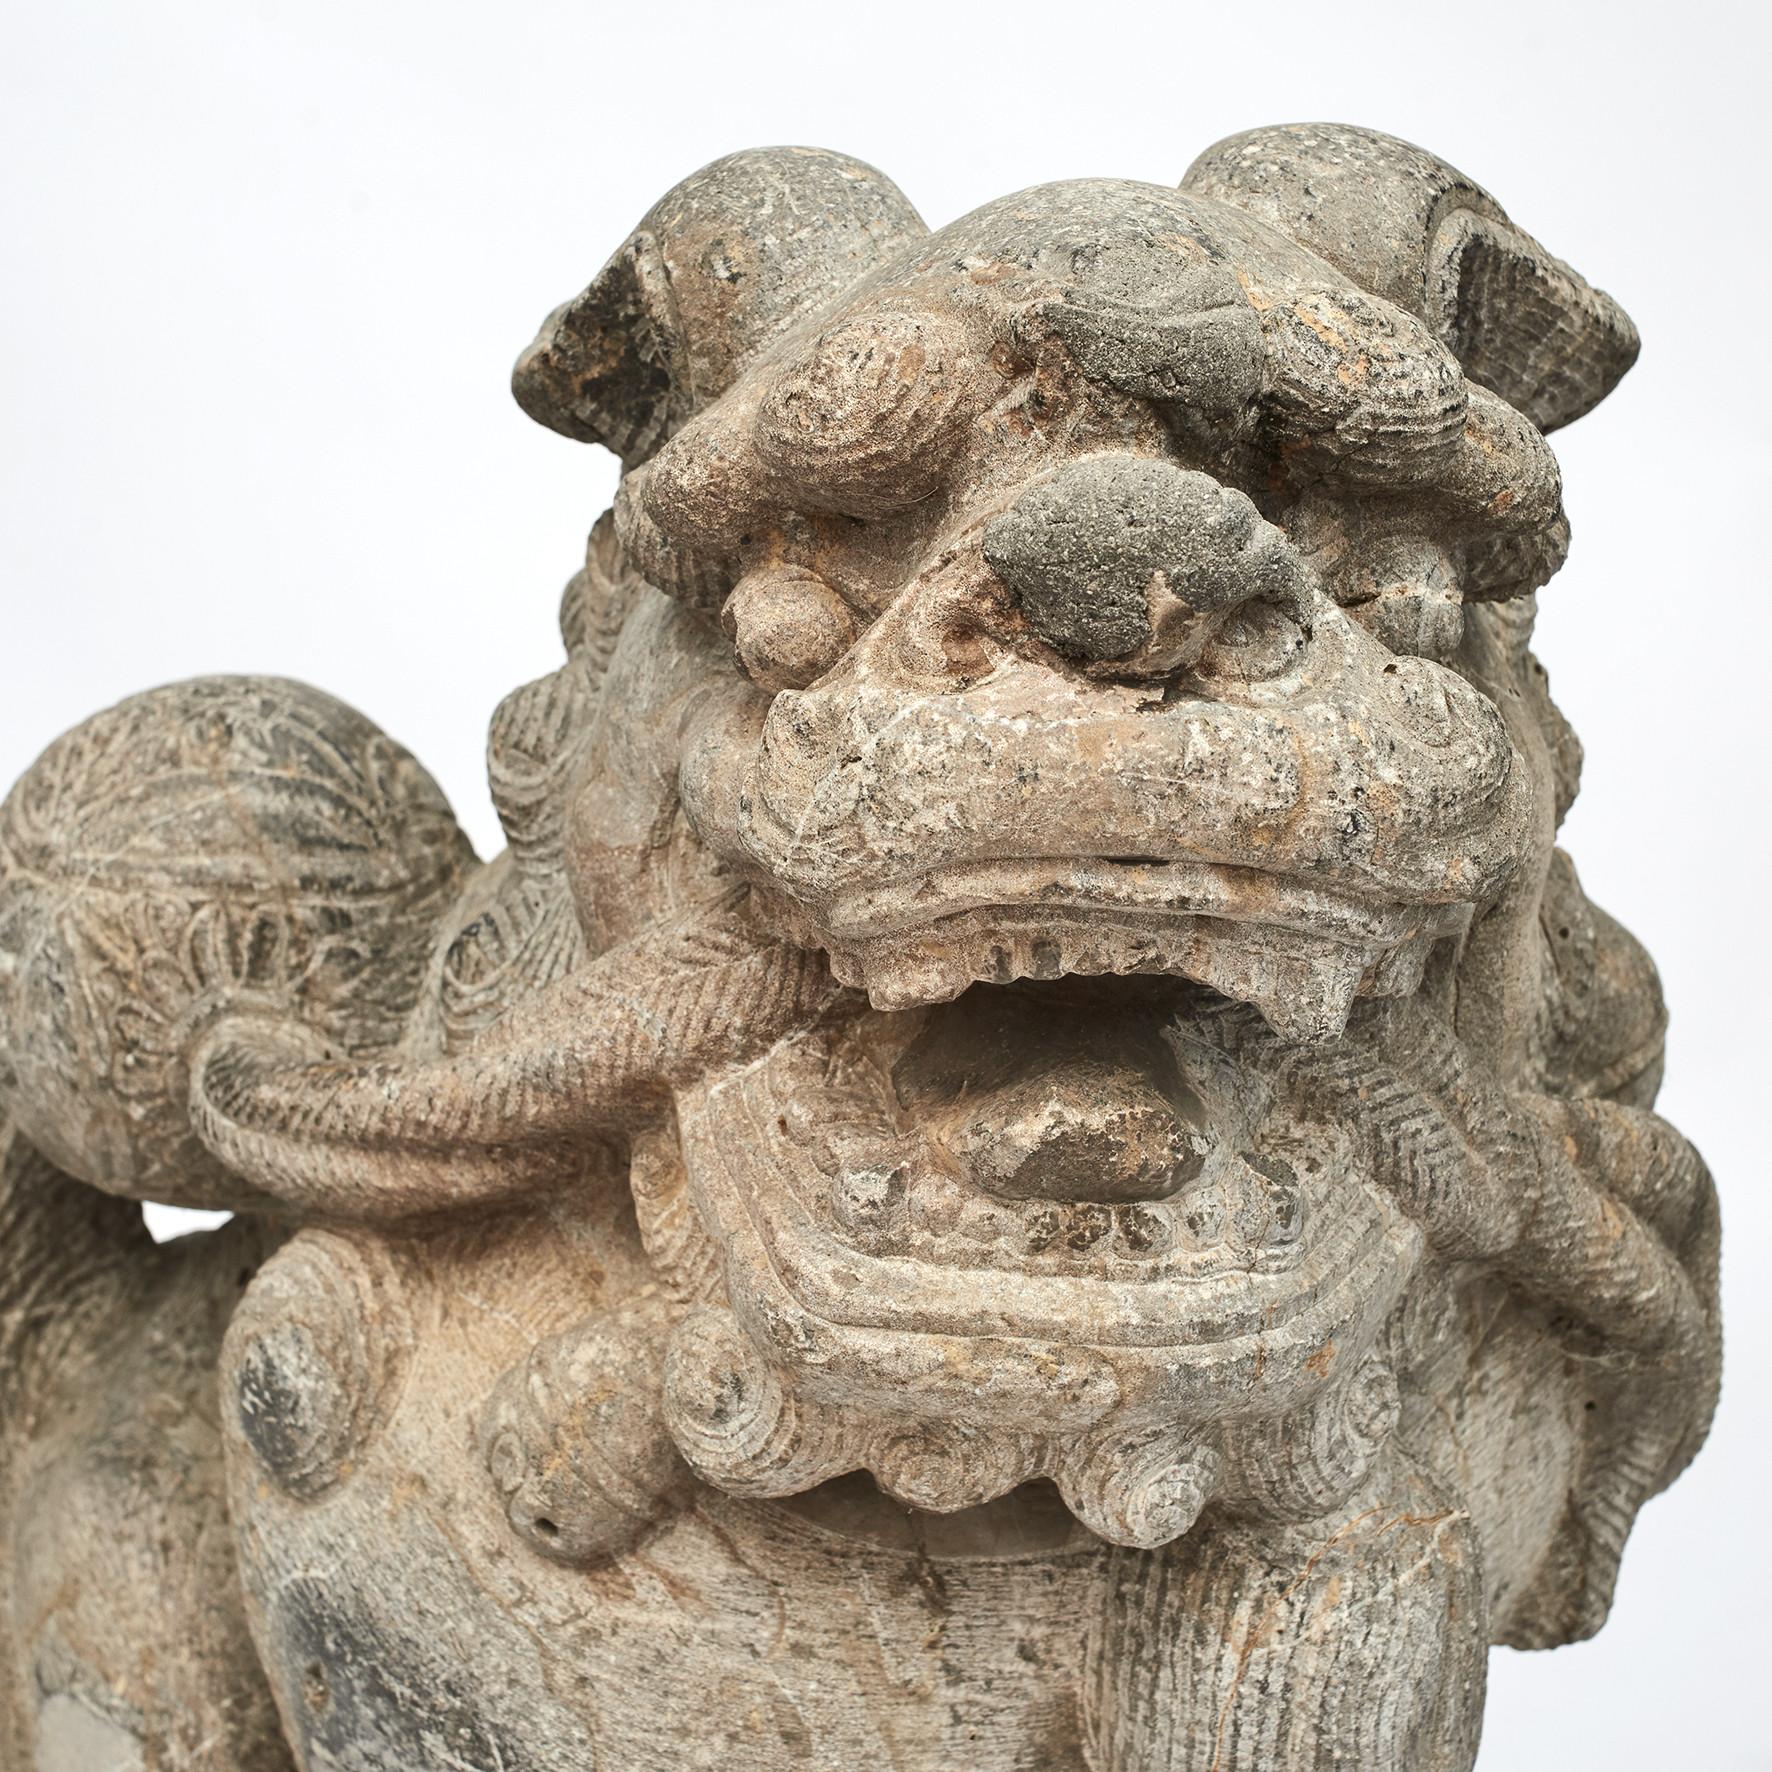 Seltene Paar große chinesische geschnitzte Stein foo Hund Wächter Löwen. Sie stammt aus dem Haus eines Mandarins (eines Beamten im chinesischen Kaiserreich), das an der Seidenstraße lag.
Hier wurden sie vor dem Tor aufgestellt, wobei die Tortüren